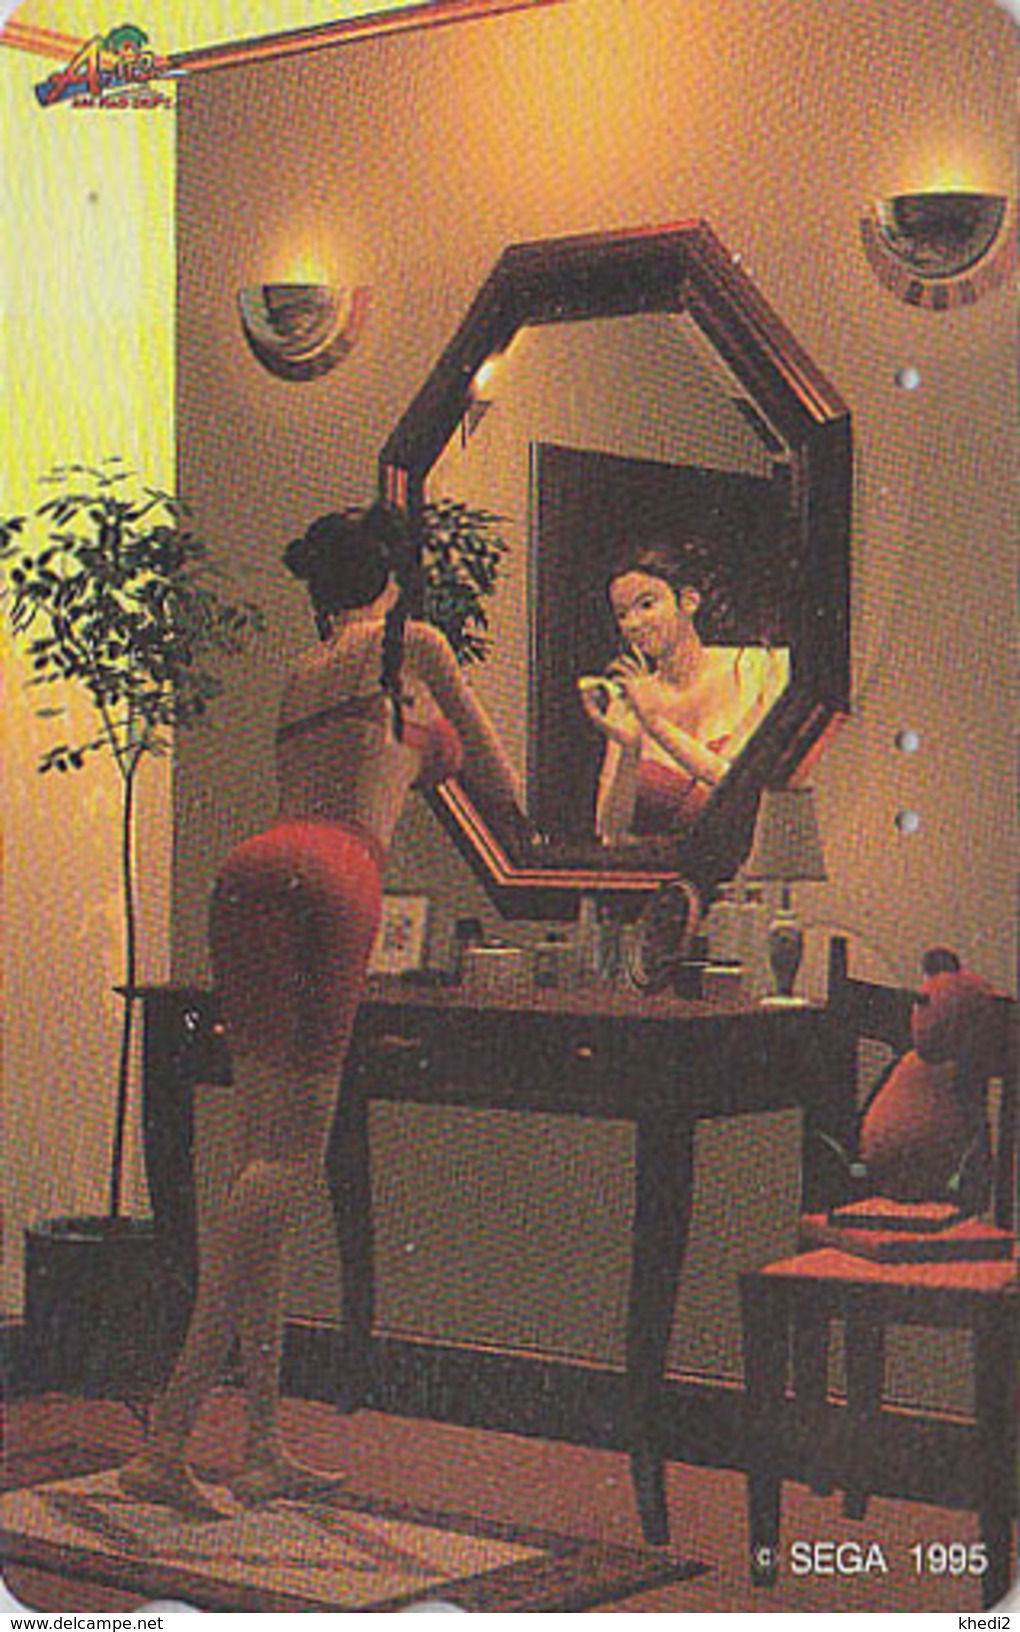 Télécarte Japon / 110-011 - Jeu Video - SEGA - Femme érotique - Erotic Bikini Girl - Game Japan Phonecard / Manga - 4033 - Games